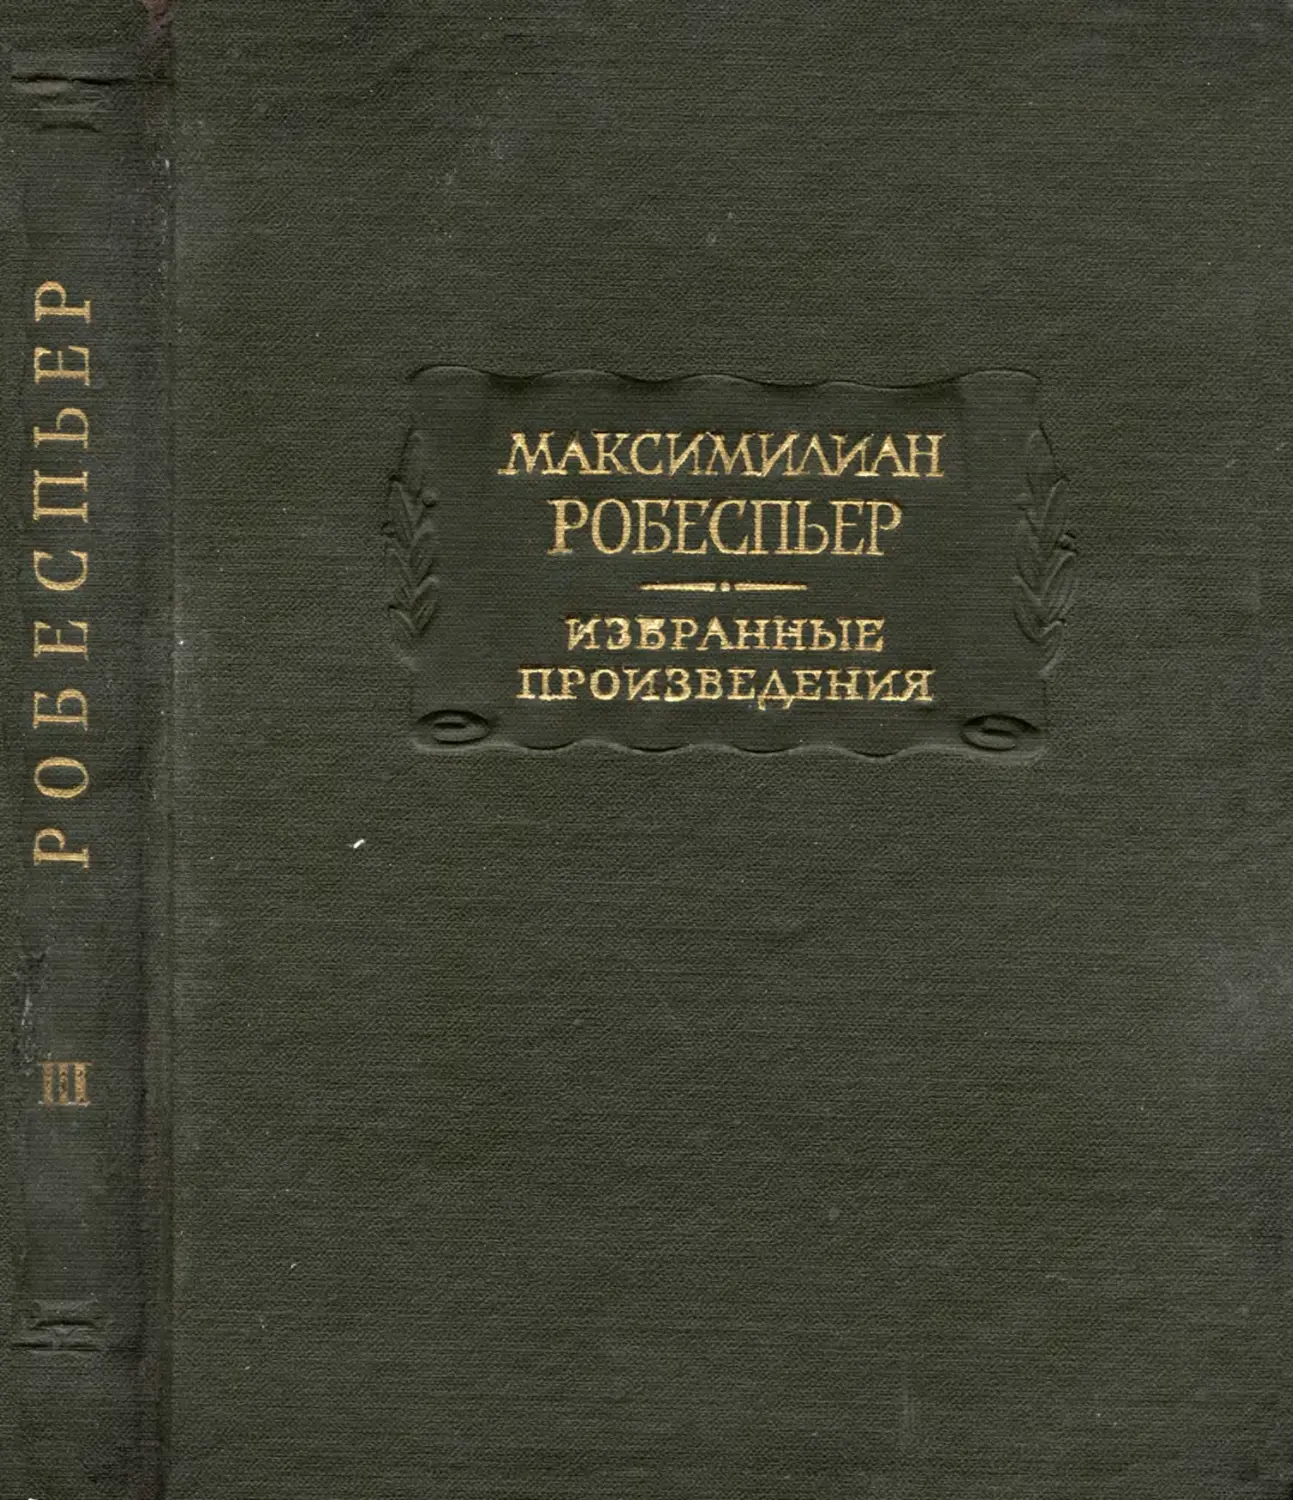 Робеспьер М. Избранные произведения. Т.III - 1965